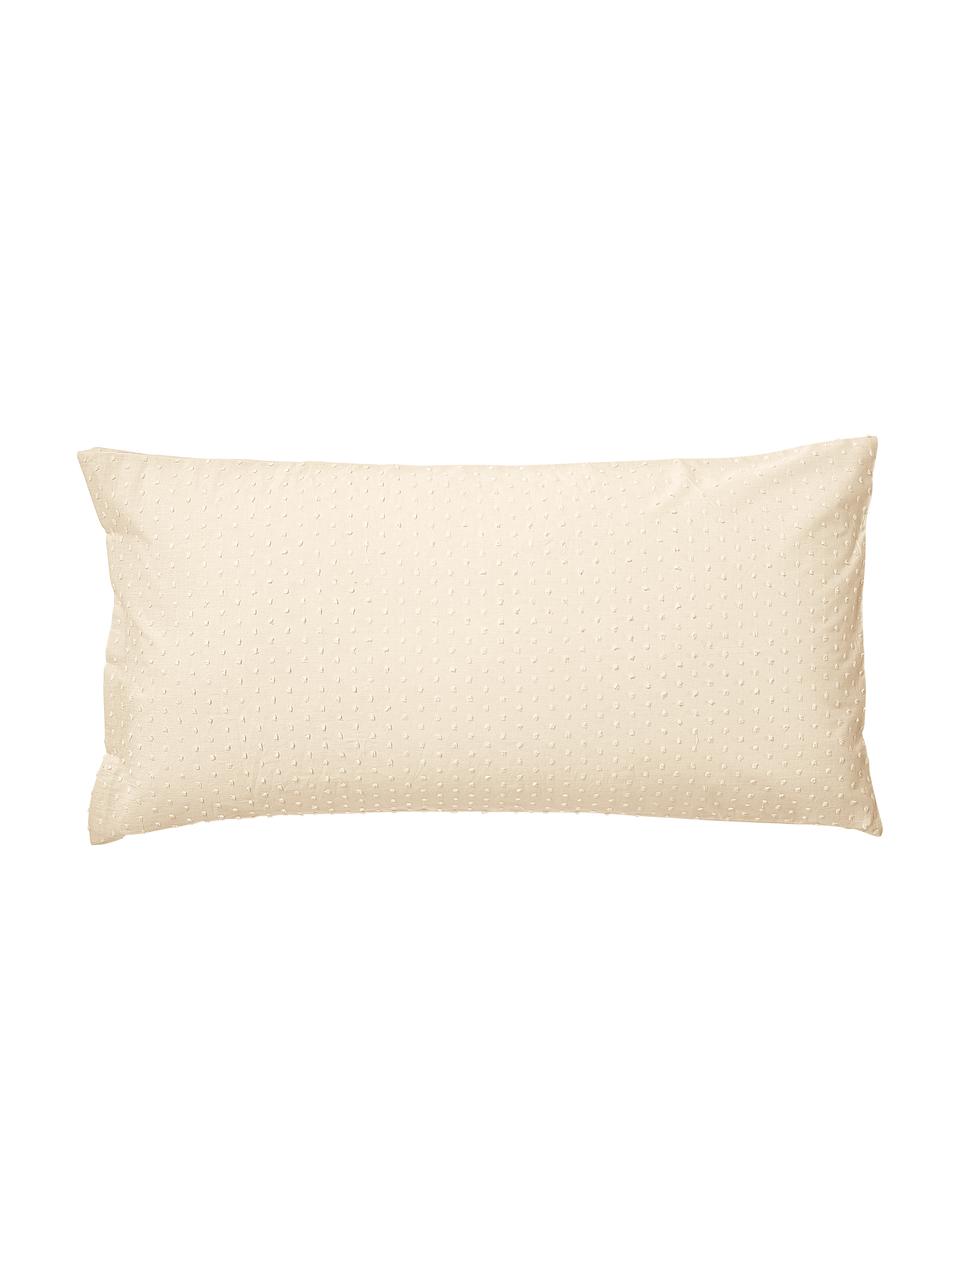 Poszewka na poduszkę z bawełny plumeti Aloide, 2 szt., Pastelowy żółty, S 40 x D 80 cm